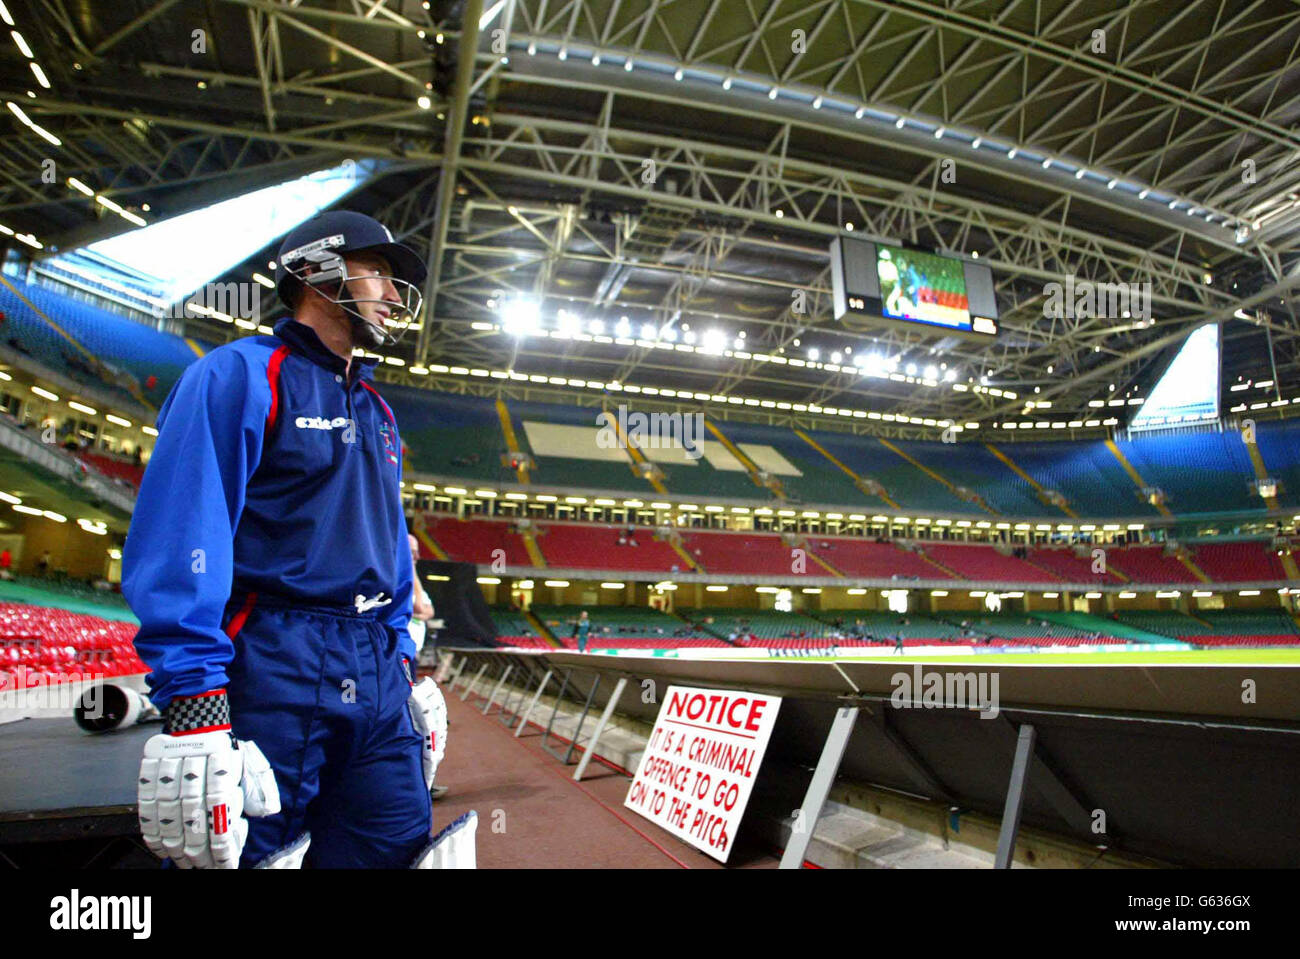 El capitán de los británicos Nasser Hussain espera su turno de batear durante la competencia de Cricket Indoor Power entre los británicos y el resto del mundo, el estadio Millennium. Foto de stock